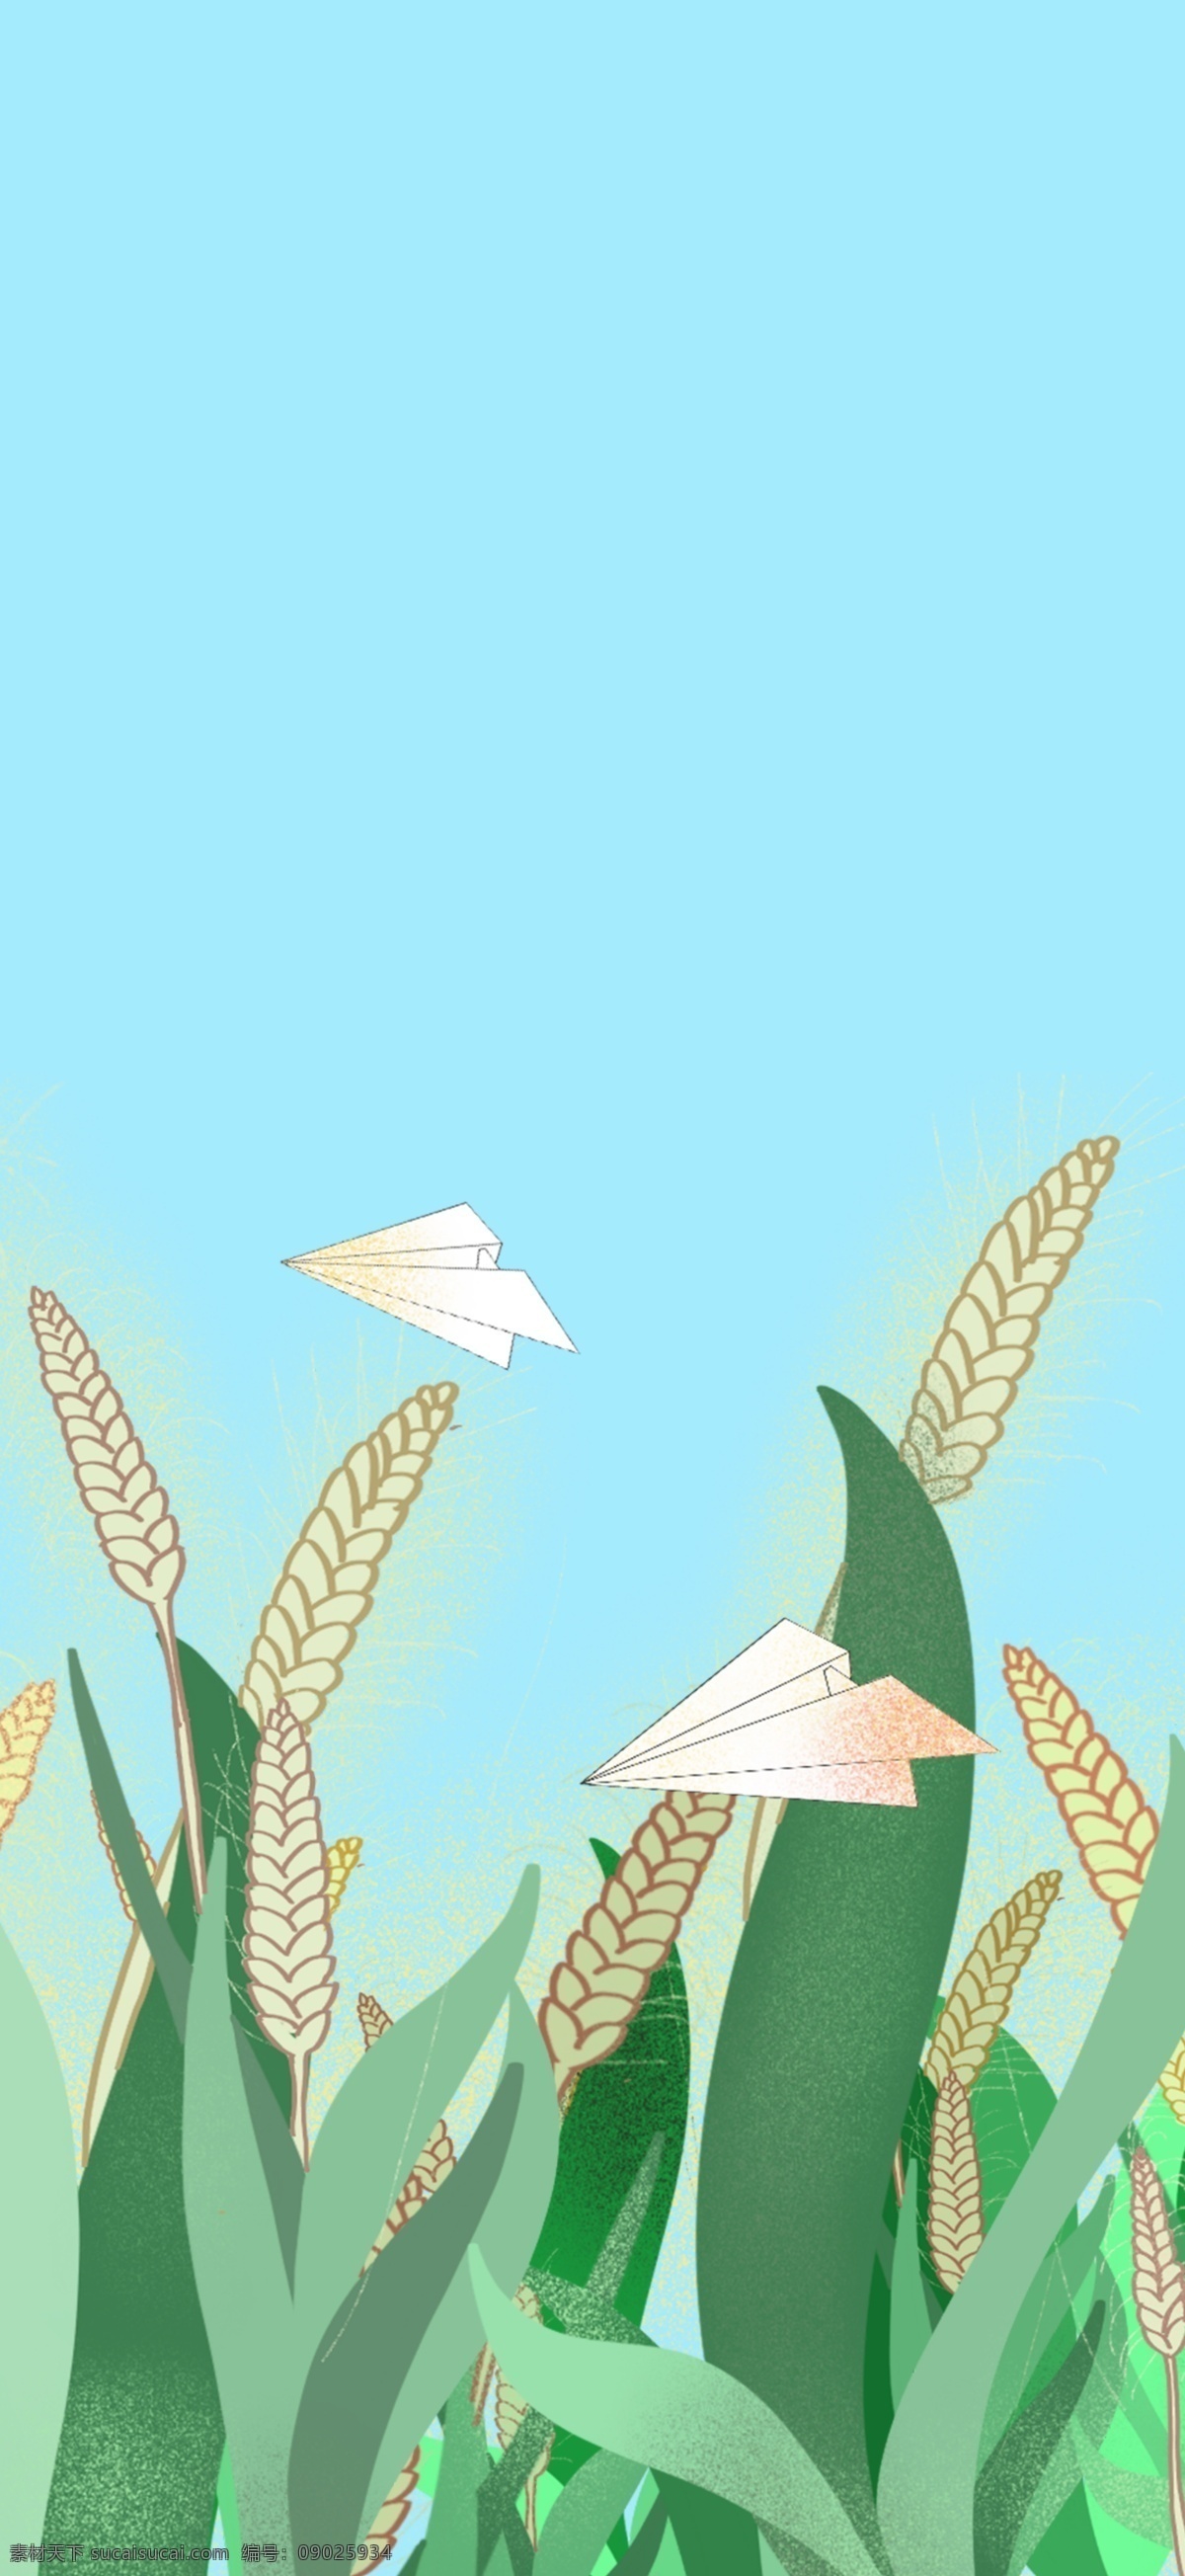 二十四节气 小满 麦穗 插画 背景 绿色背景 植物背景 唯美 草地背景 绿地背景 蓝天白云 山水风景